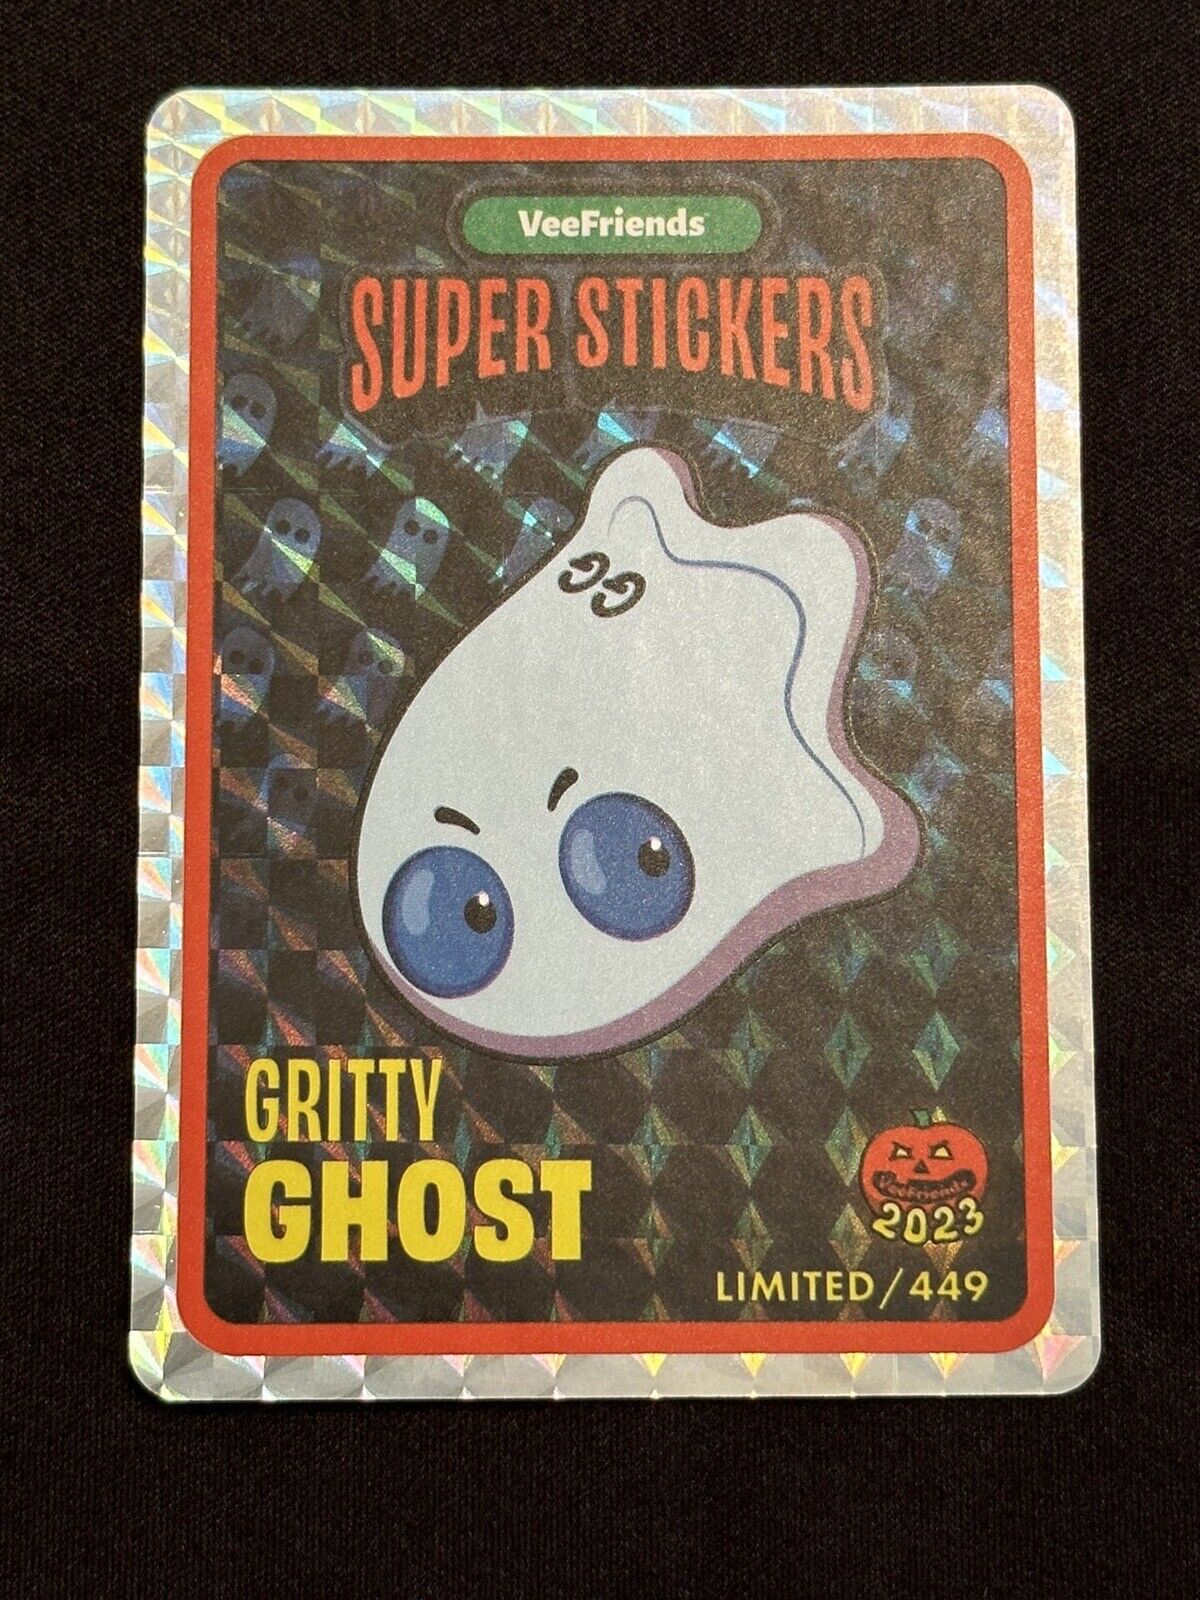 GRITTY GHOST Super Sticker /449 - Veefriends Halloween 2023 Collection